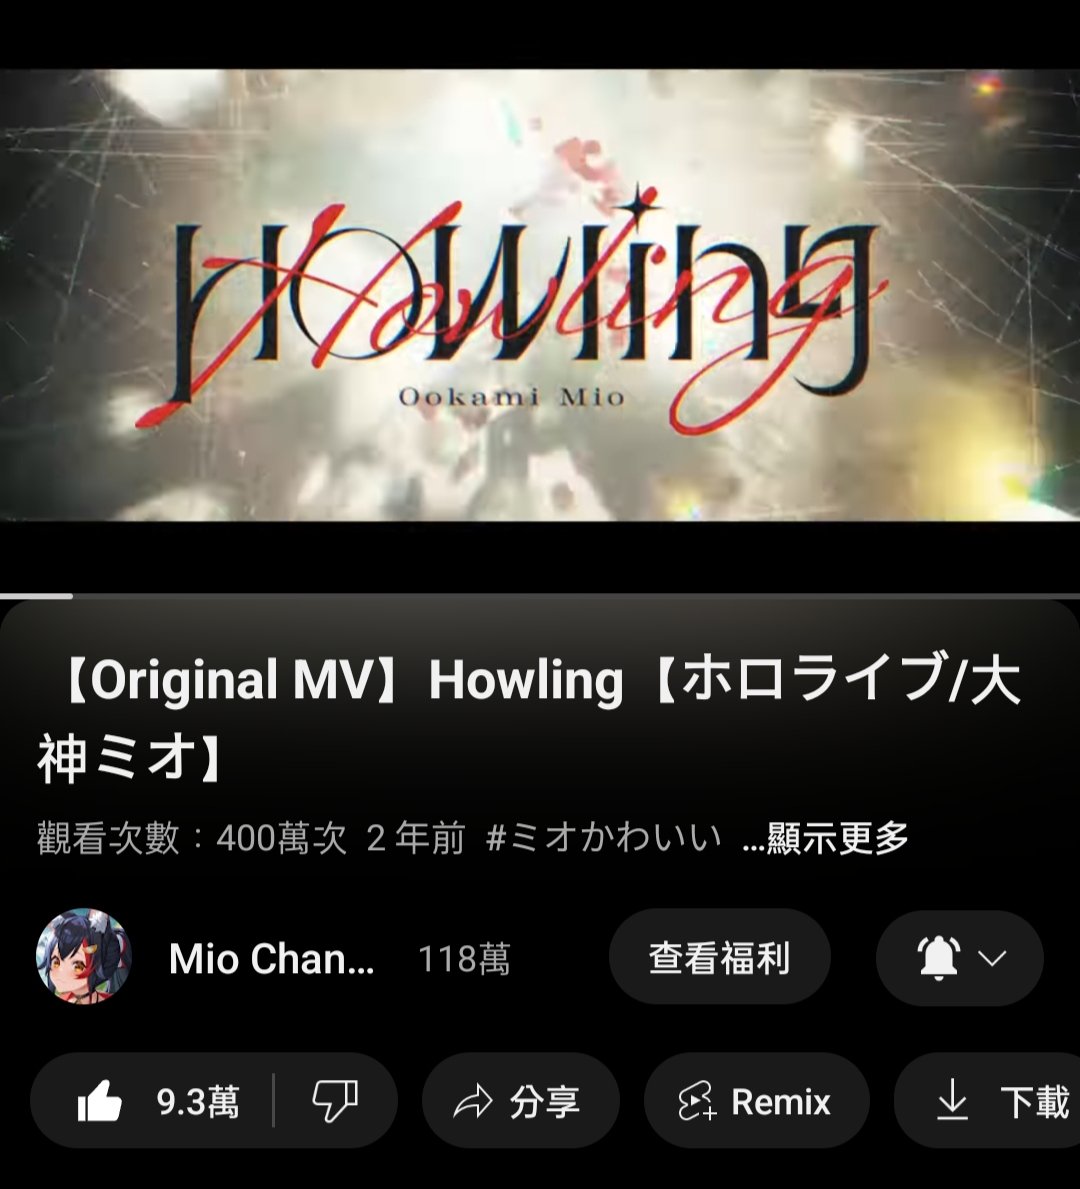 ミオしゃ，Howling 400万再生おめでとう🎉🎉🎉
#ミオかわいい